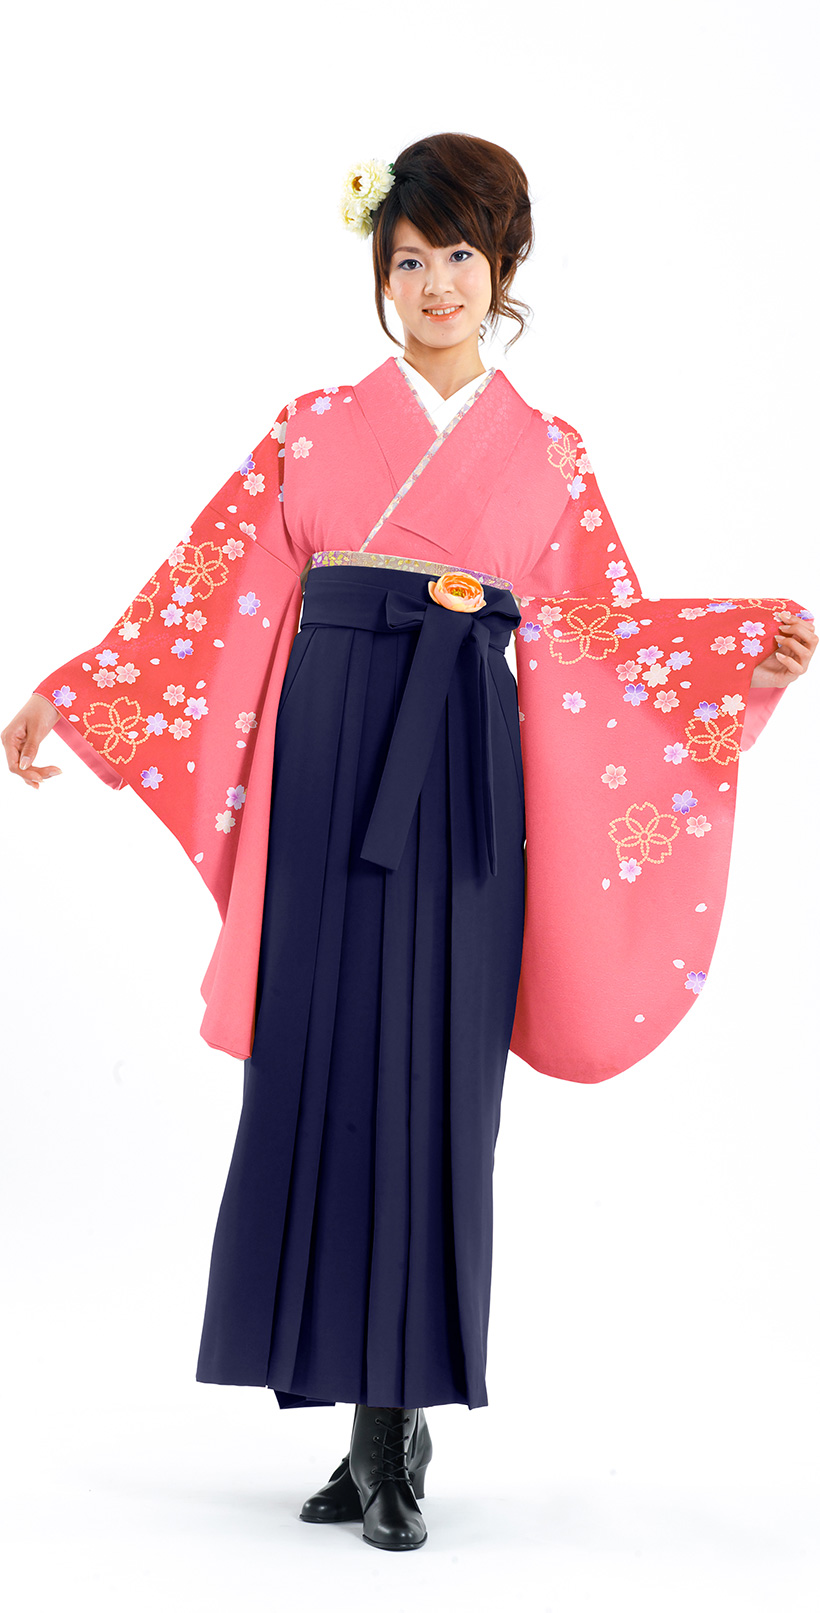 王道ピンクの袴スタイル